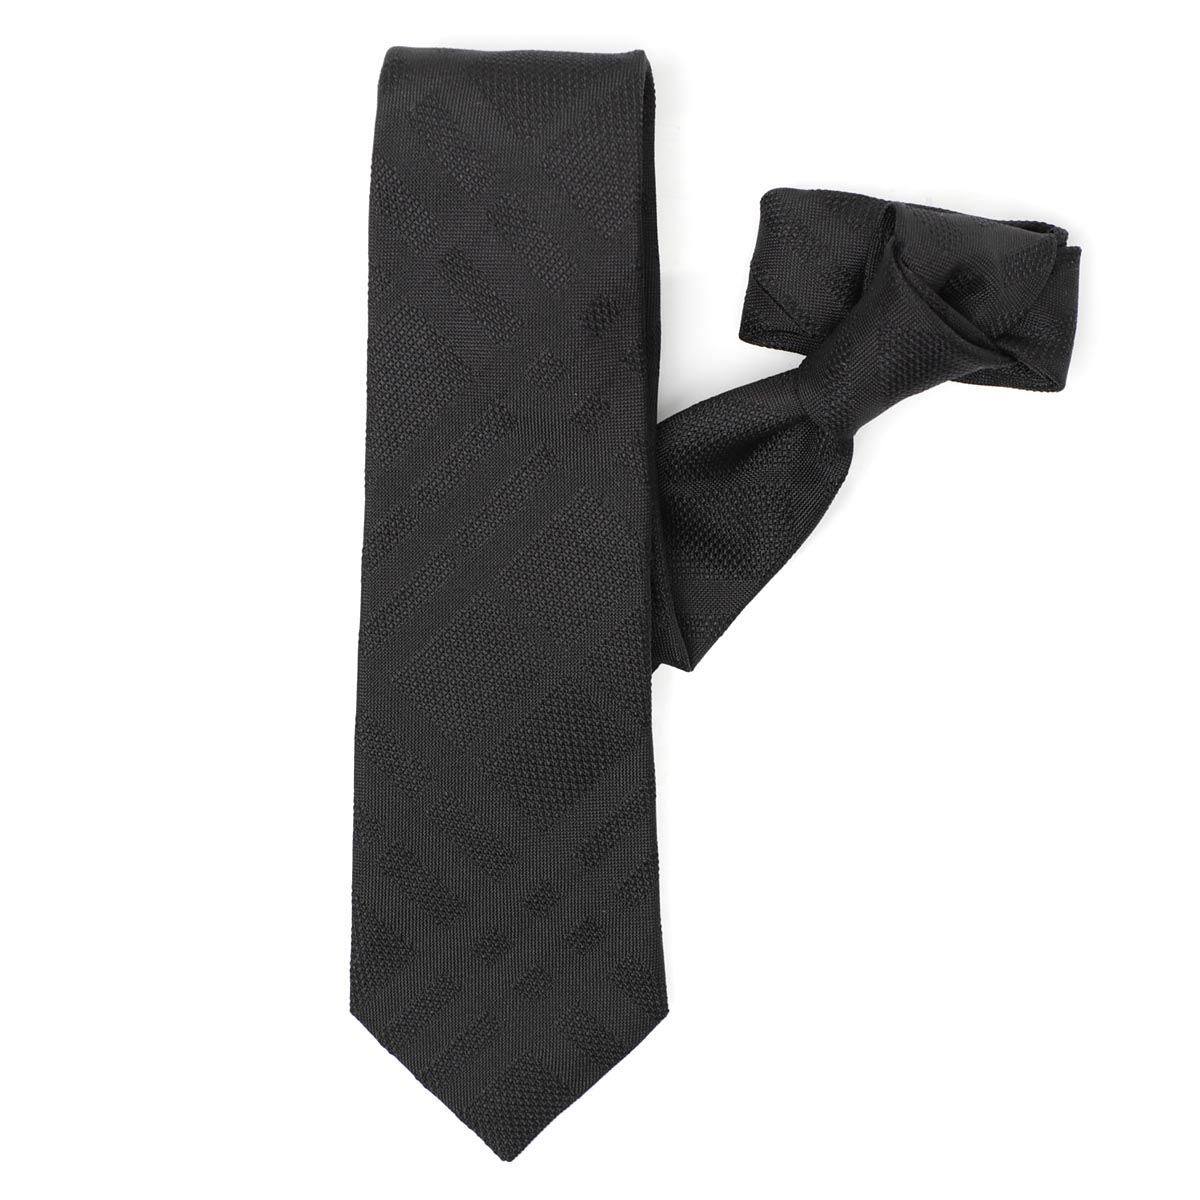 burberry tie black